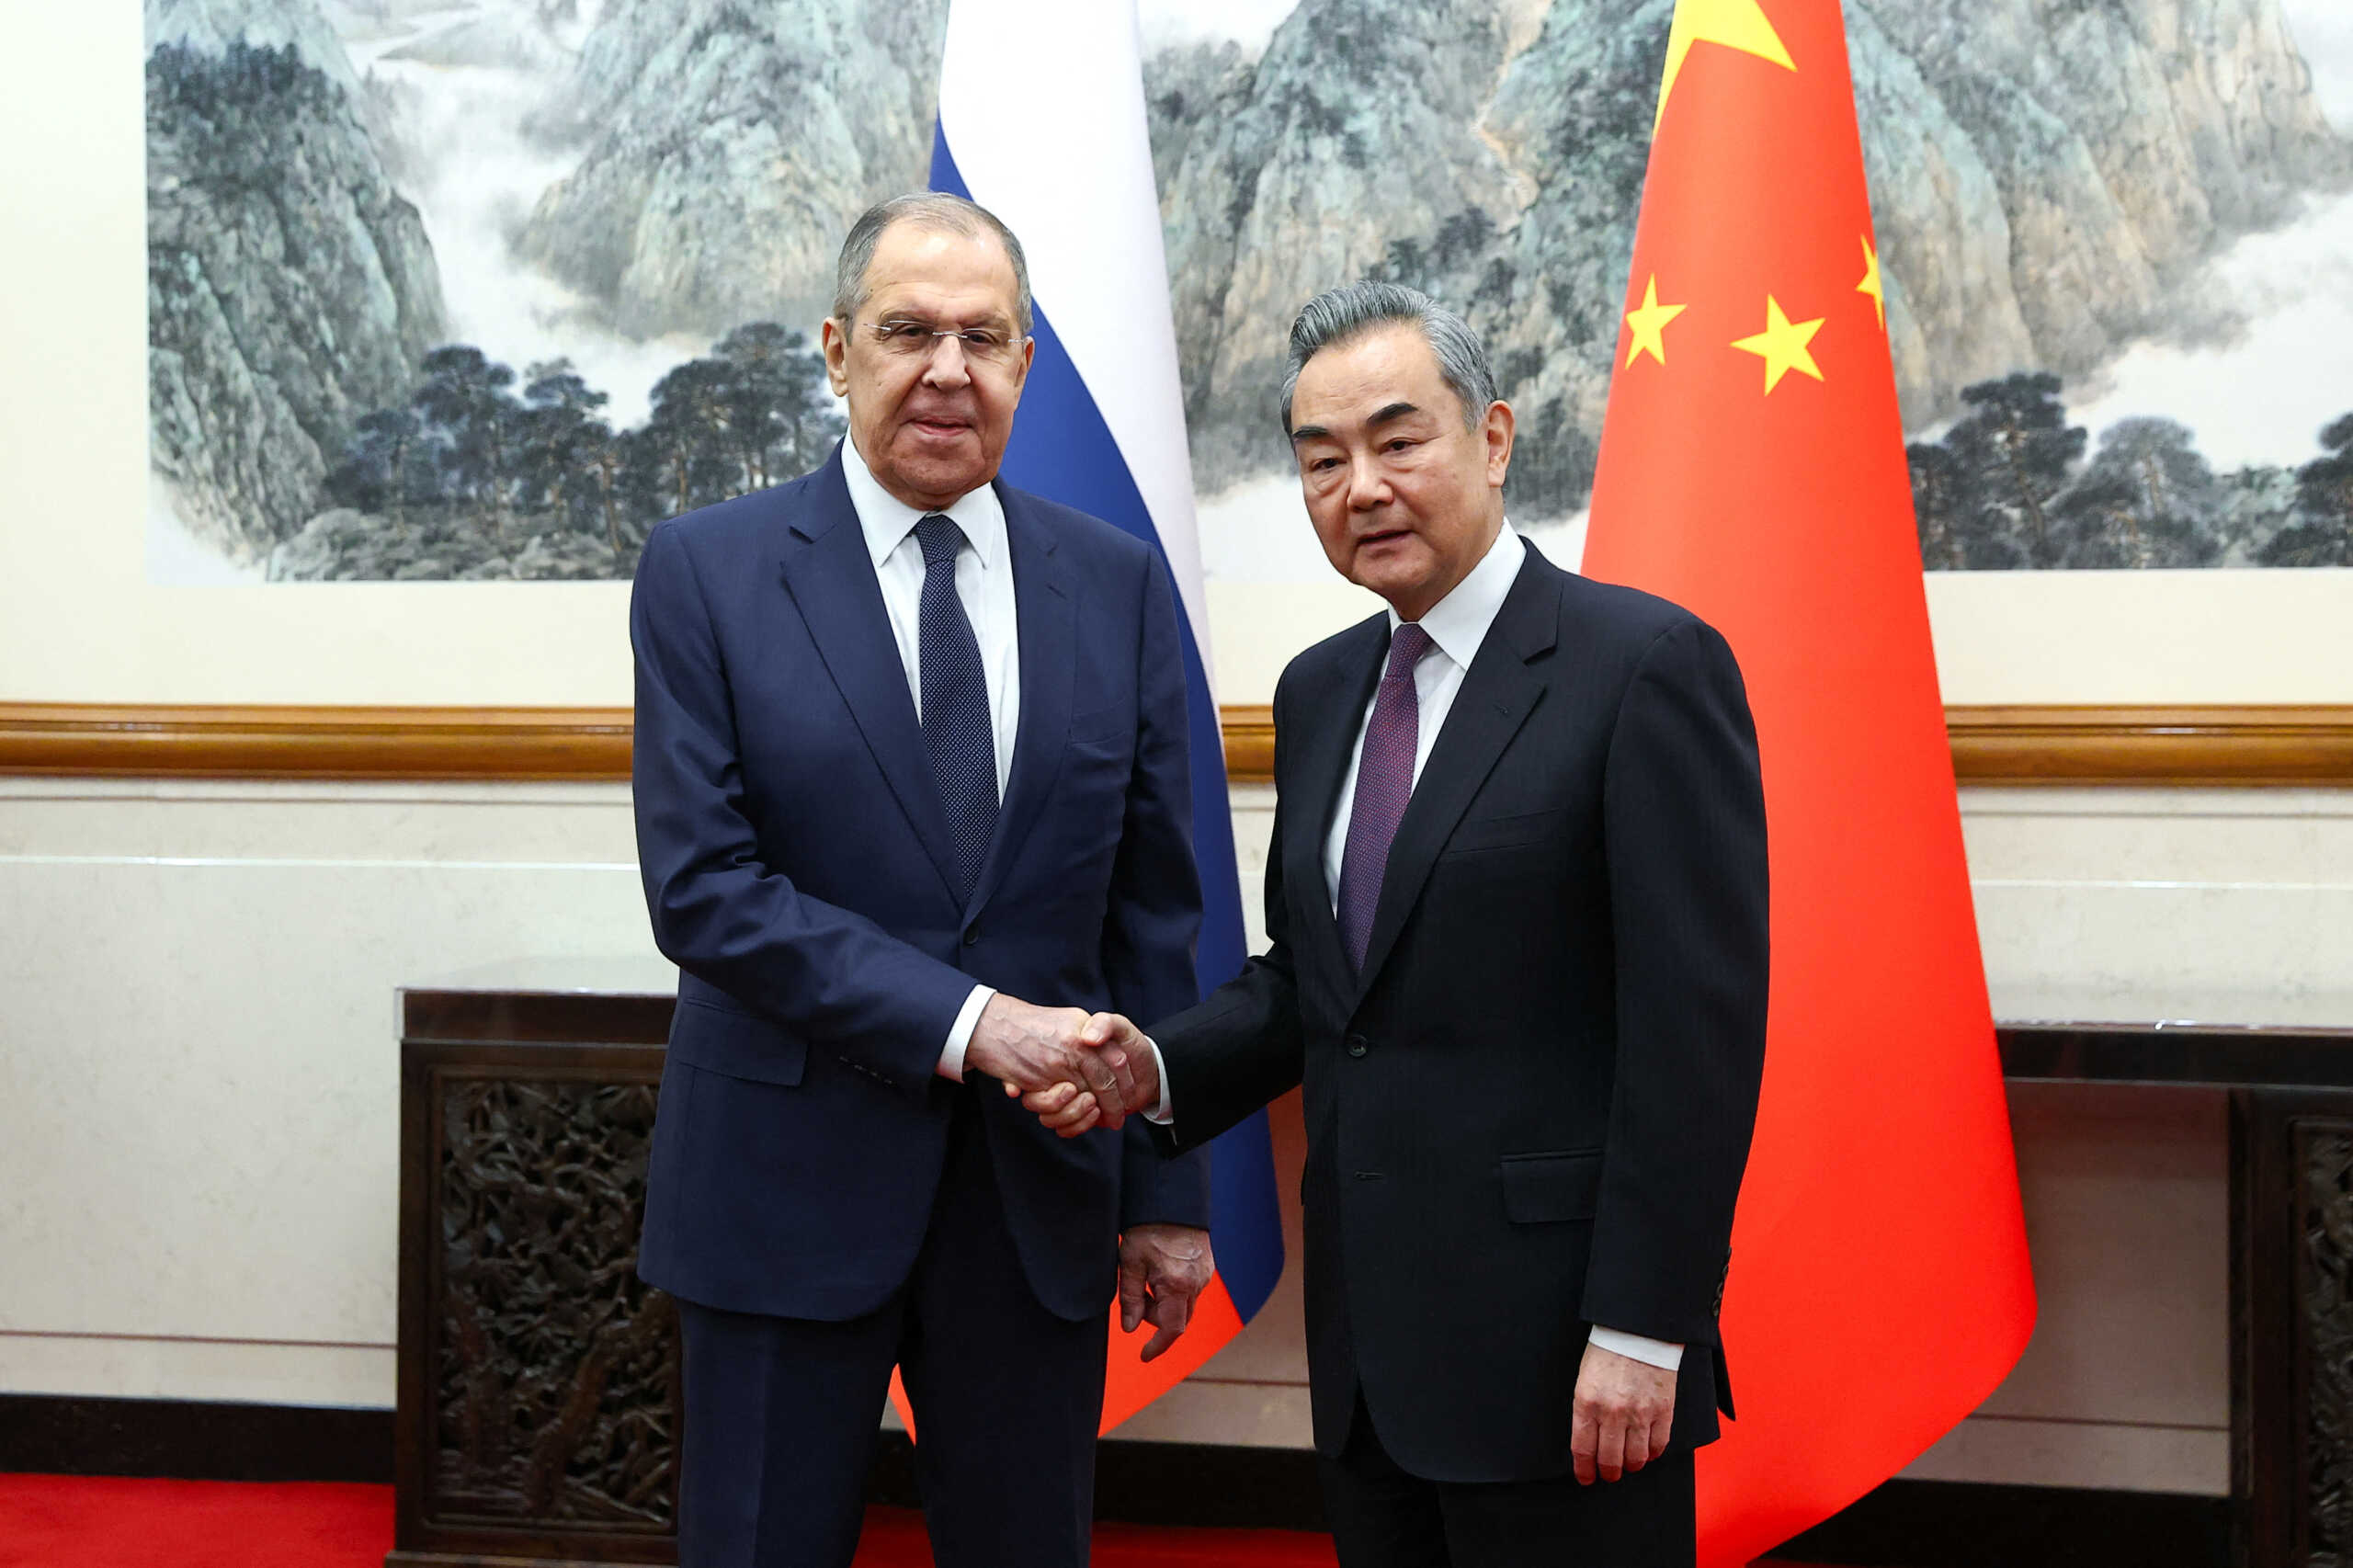 Ρωσία και Κίνα στοχεύουν σε μια ισχυρή στρατηγική συνεργασία – Επίσκεψη Λαβρόφ στο Πεκίνο